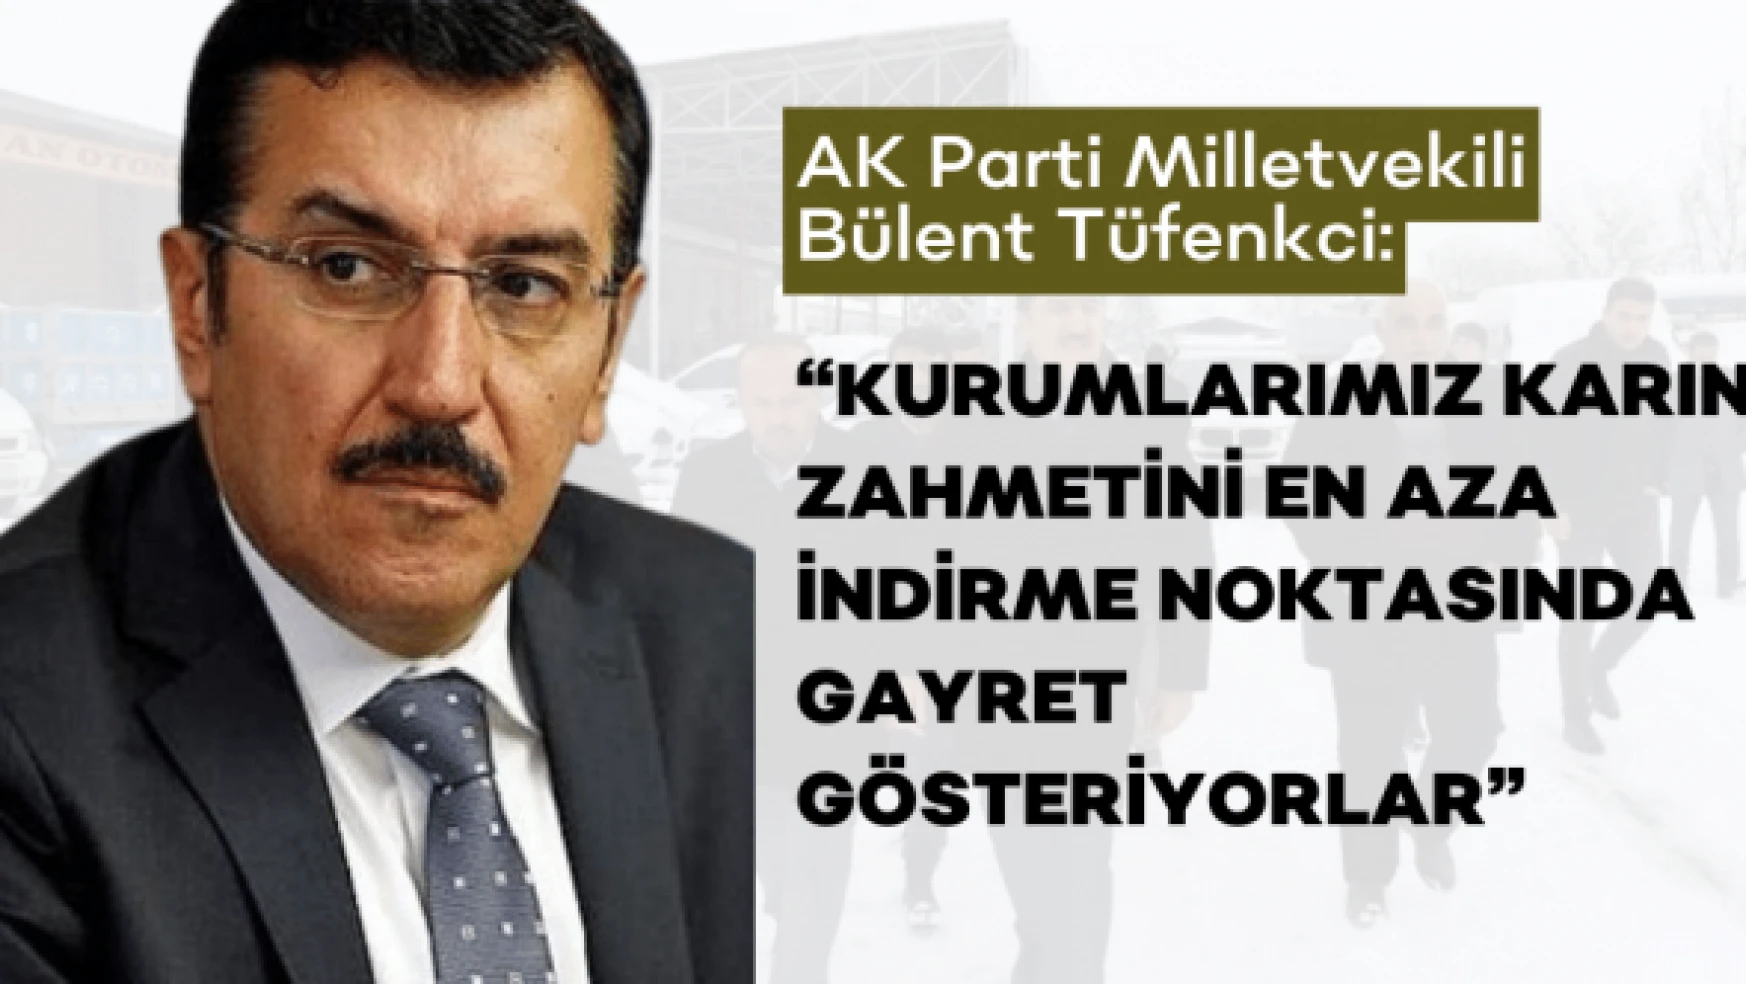 Milletvekili Tüfenkci: " Ekiplerimiz karla mücadele ediyor"